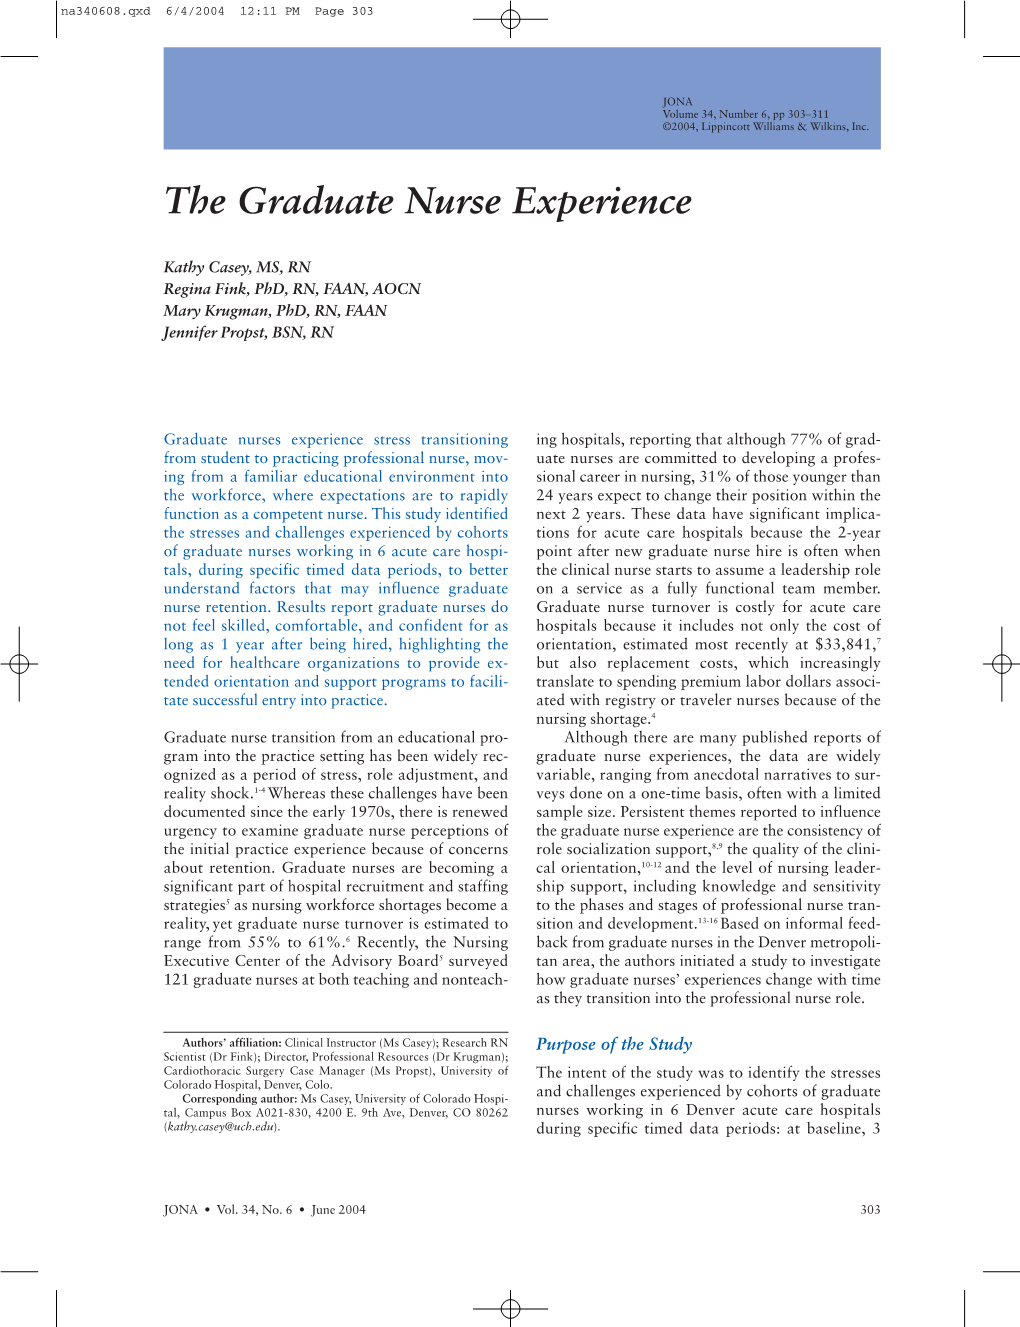 JONA: the Graduate Nurse Experience